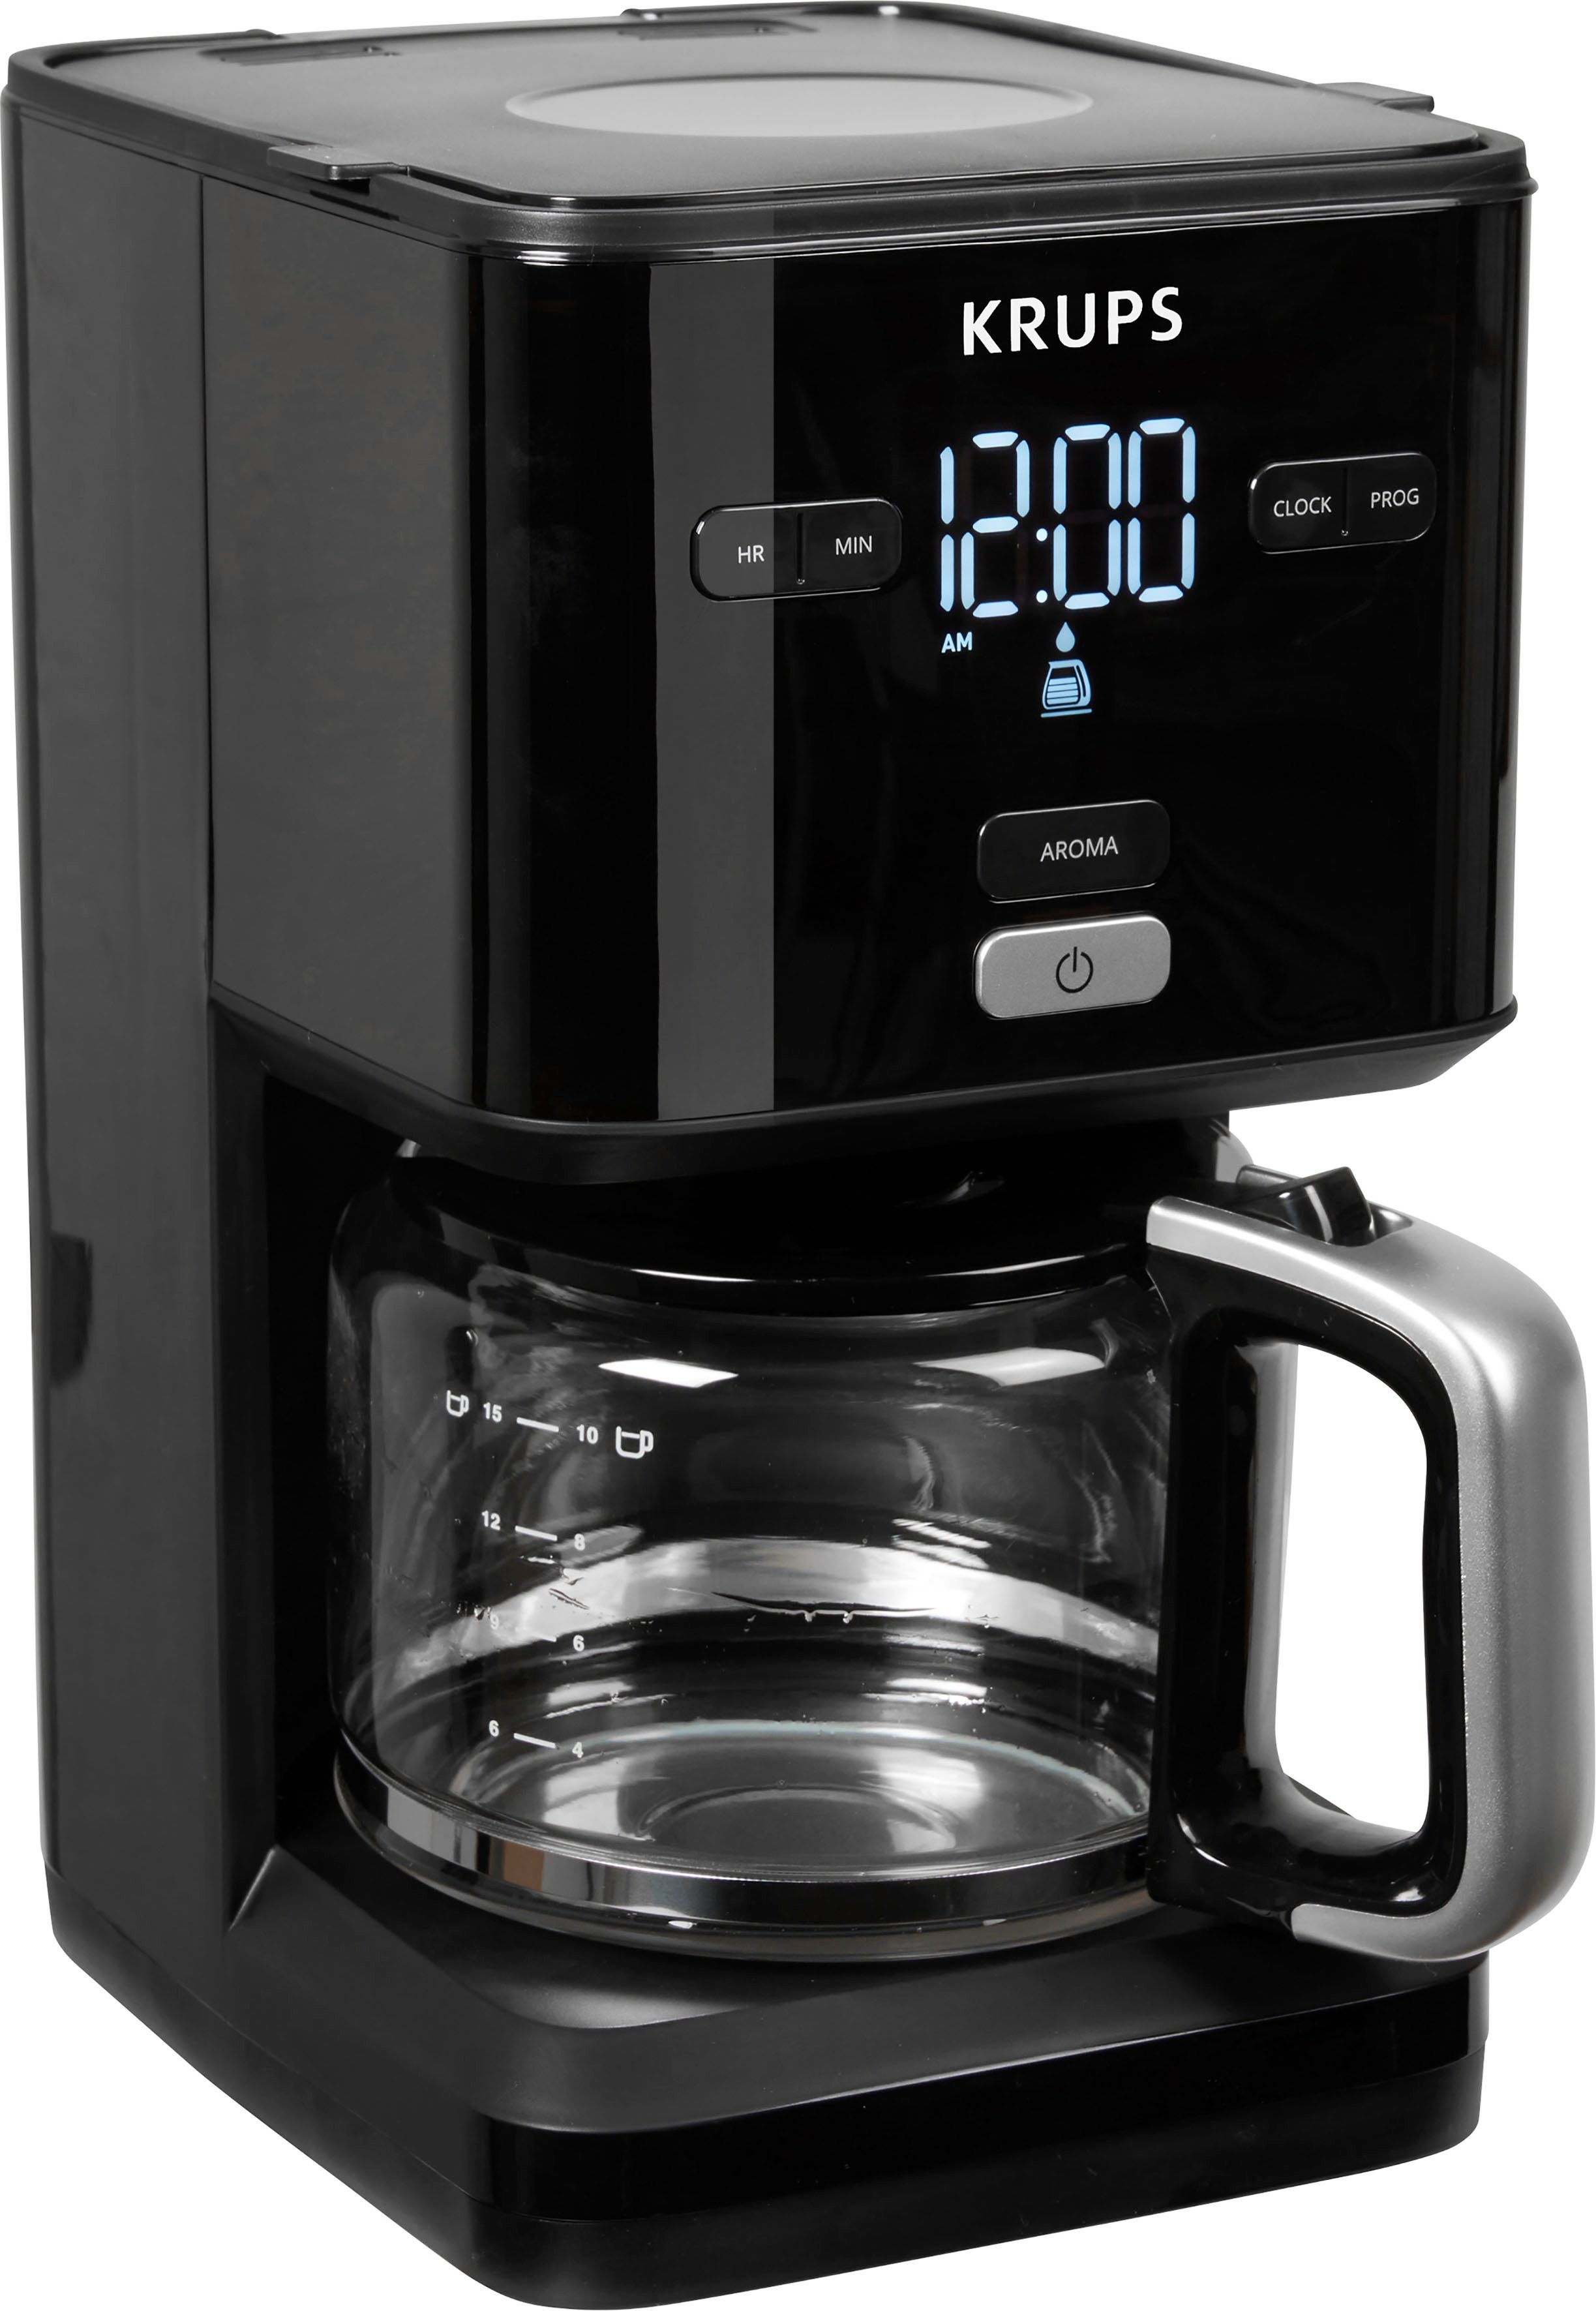 Krups Filterkaffeemaschine KM6008 Smart'n Light, 1,25l Kaffeekanne,  24-Std-Timer, automatische Abschaltung nach 30 Minuten, Anti-Tropf-System  für Entnahme der Glaskanne, selbst während des Brühvorgangs